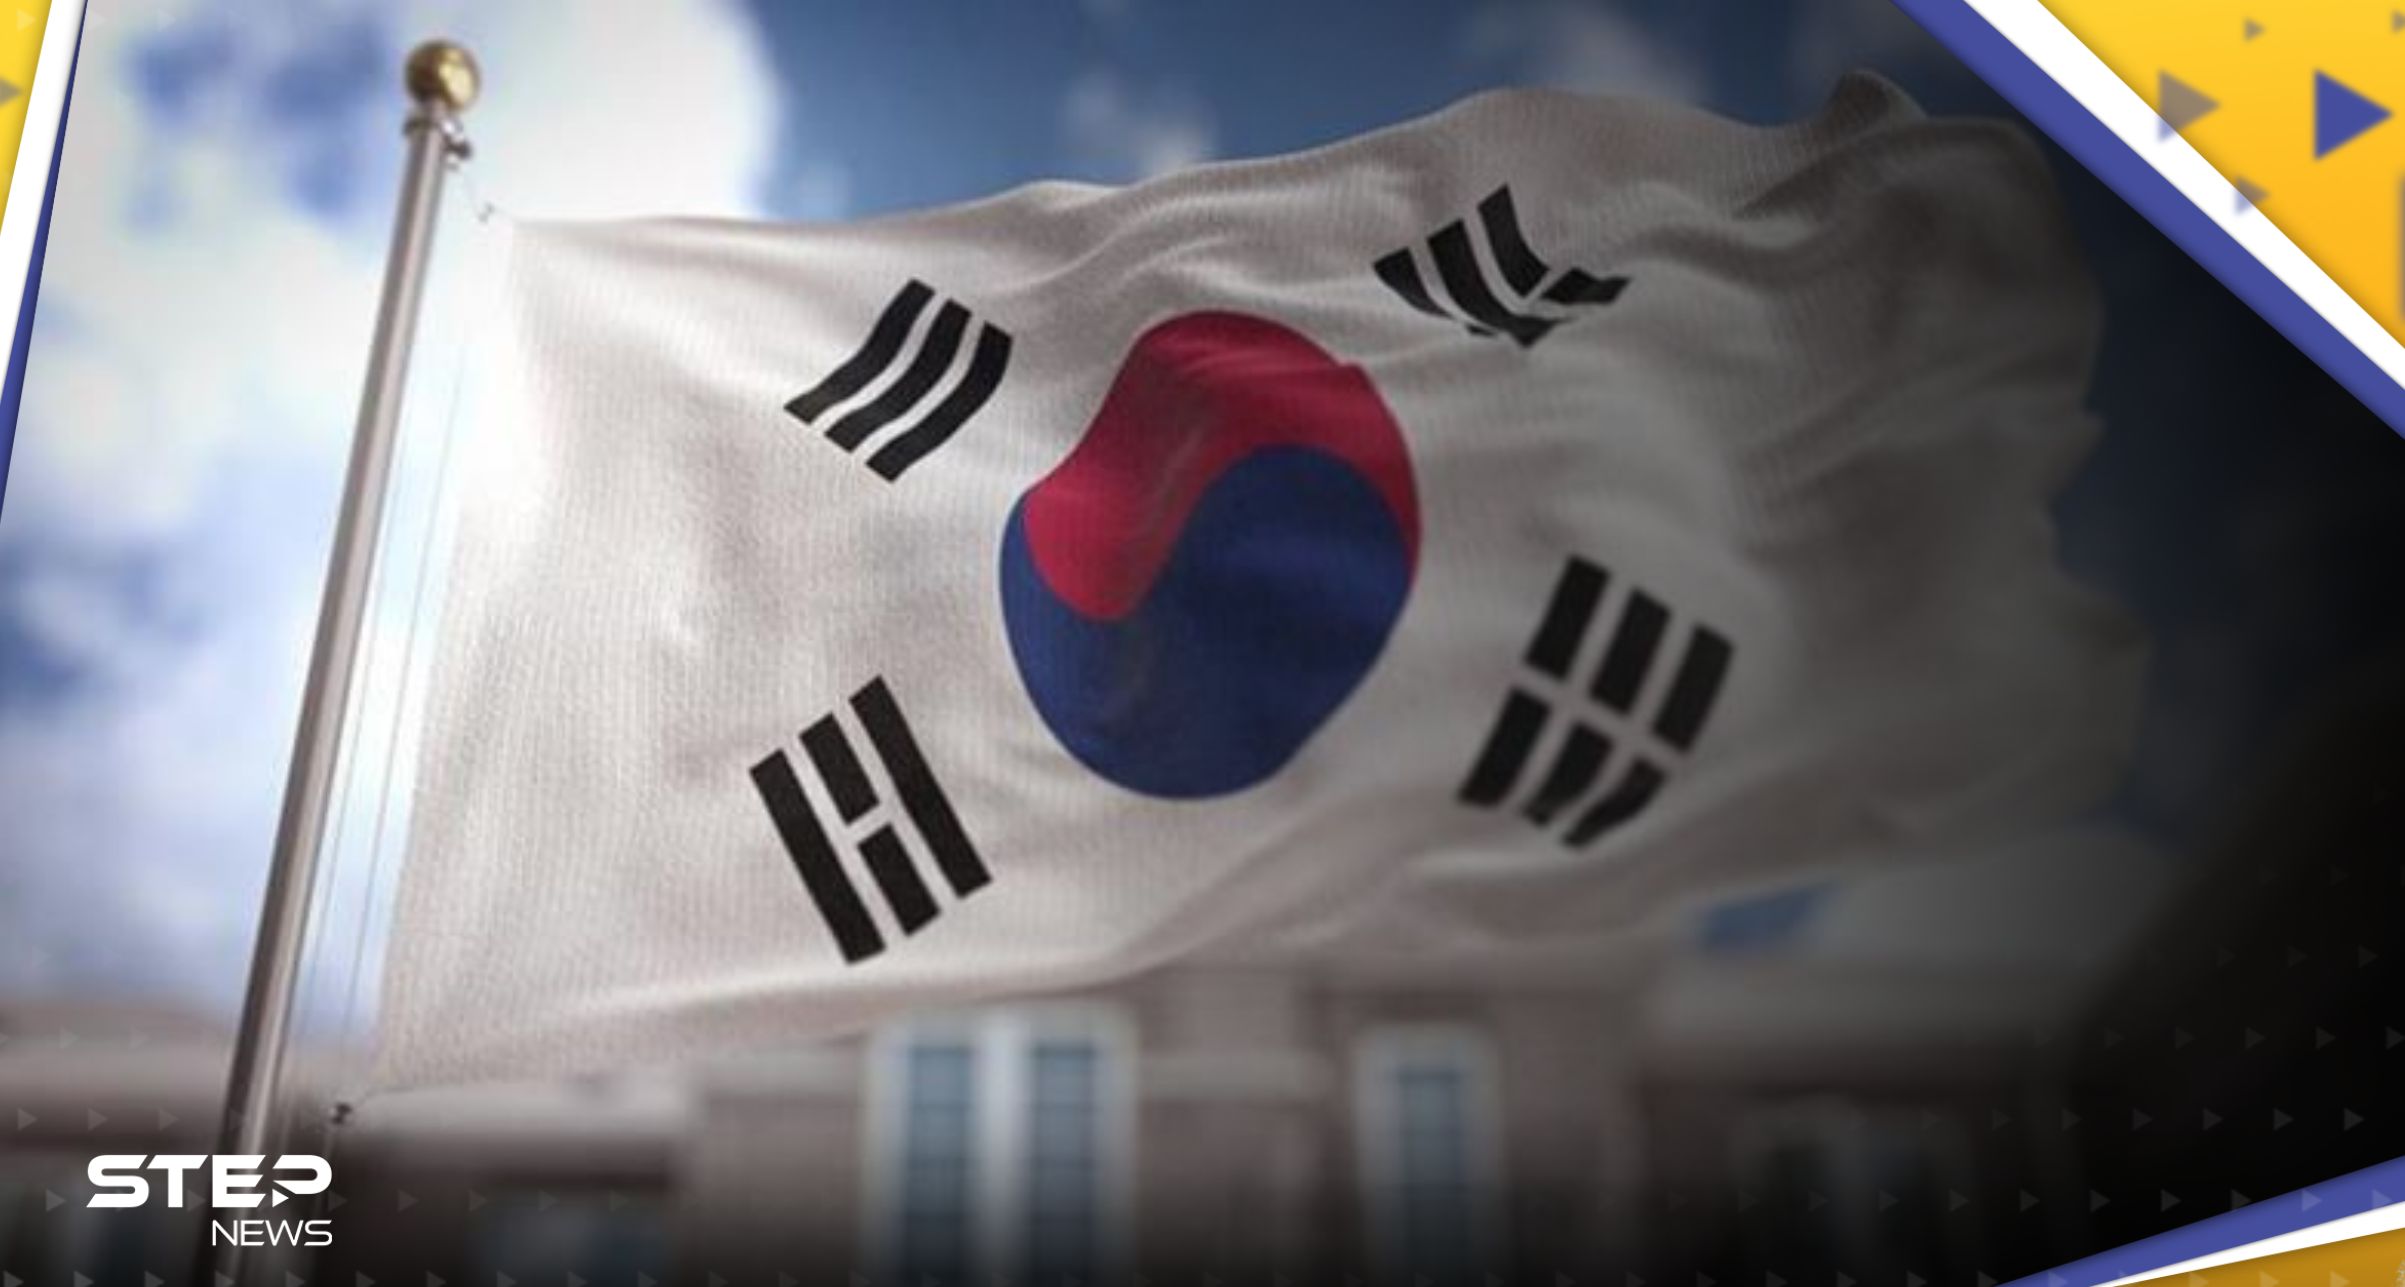 شاهد|| هجوم "طعن مخيف" في كوريا الجنوبية يوقع العديد من القتلى